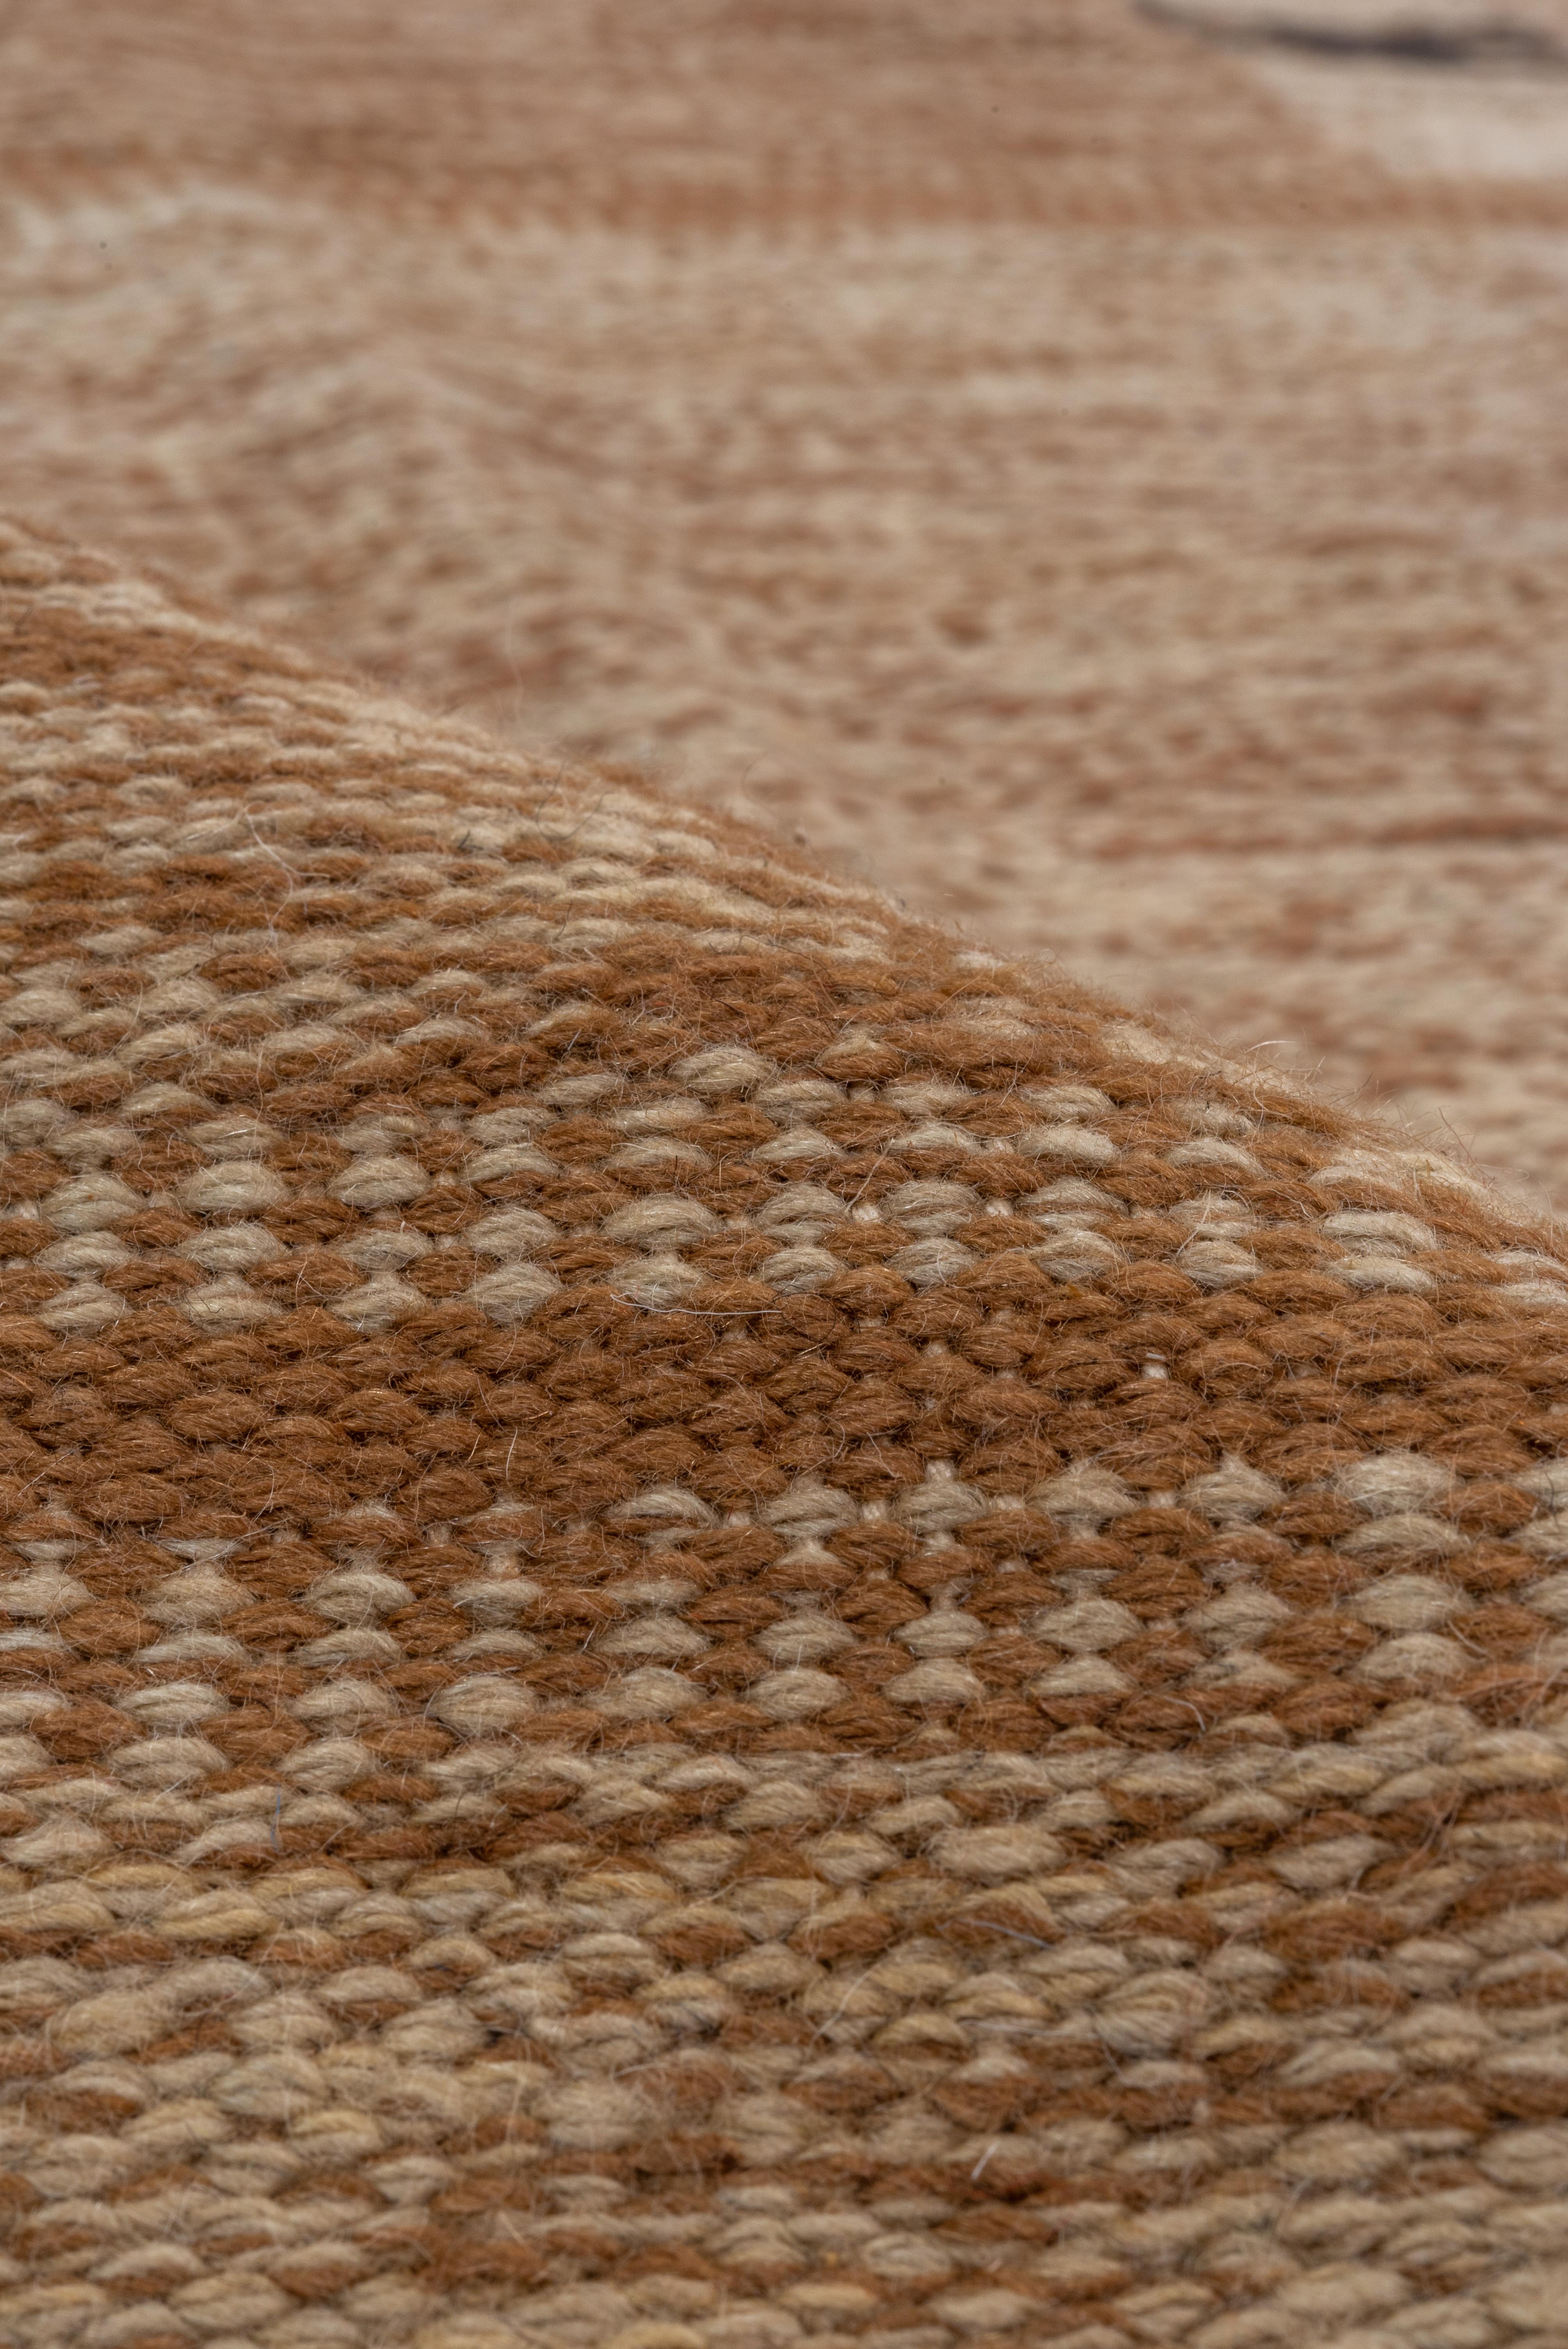 Hand-Woven Minimalist Brown Toned Scandinavian Design Rug